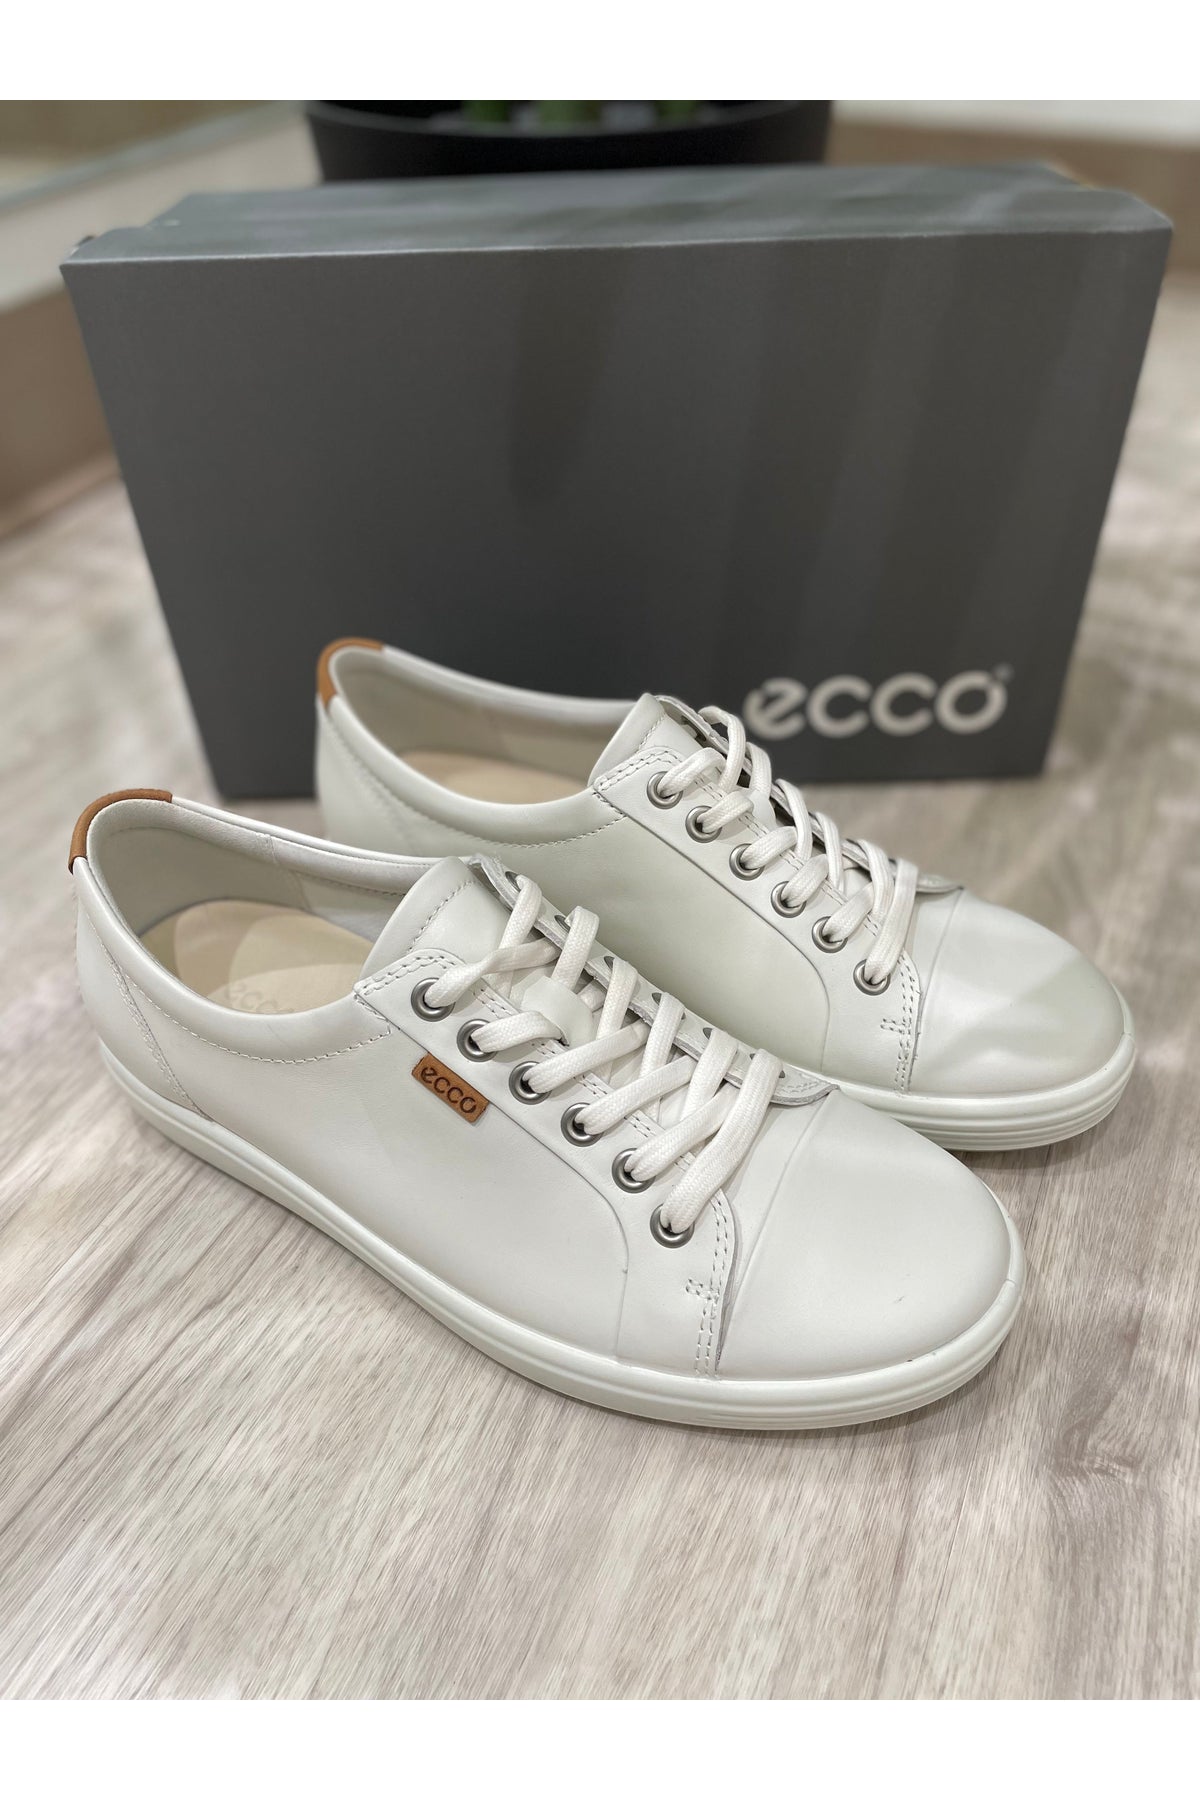 ECCO Soft 7 Sneaker 430003